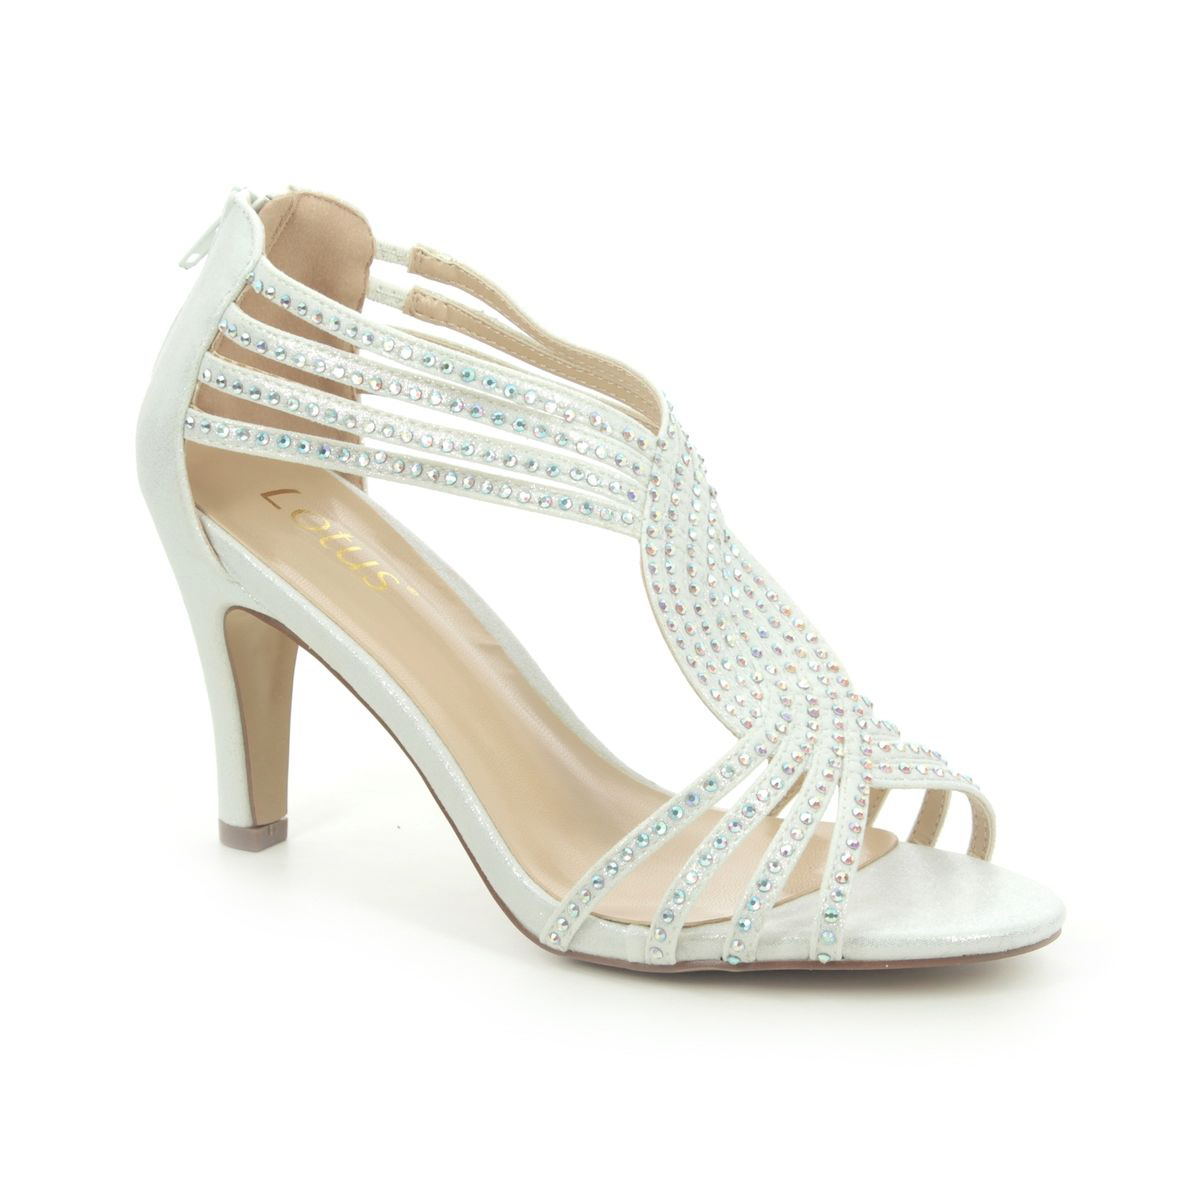 Buy > silver heel sandals > in stock